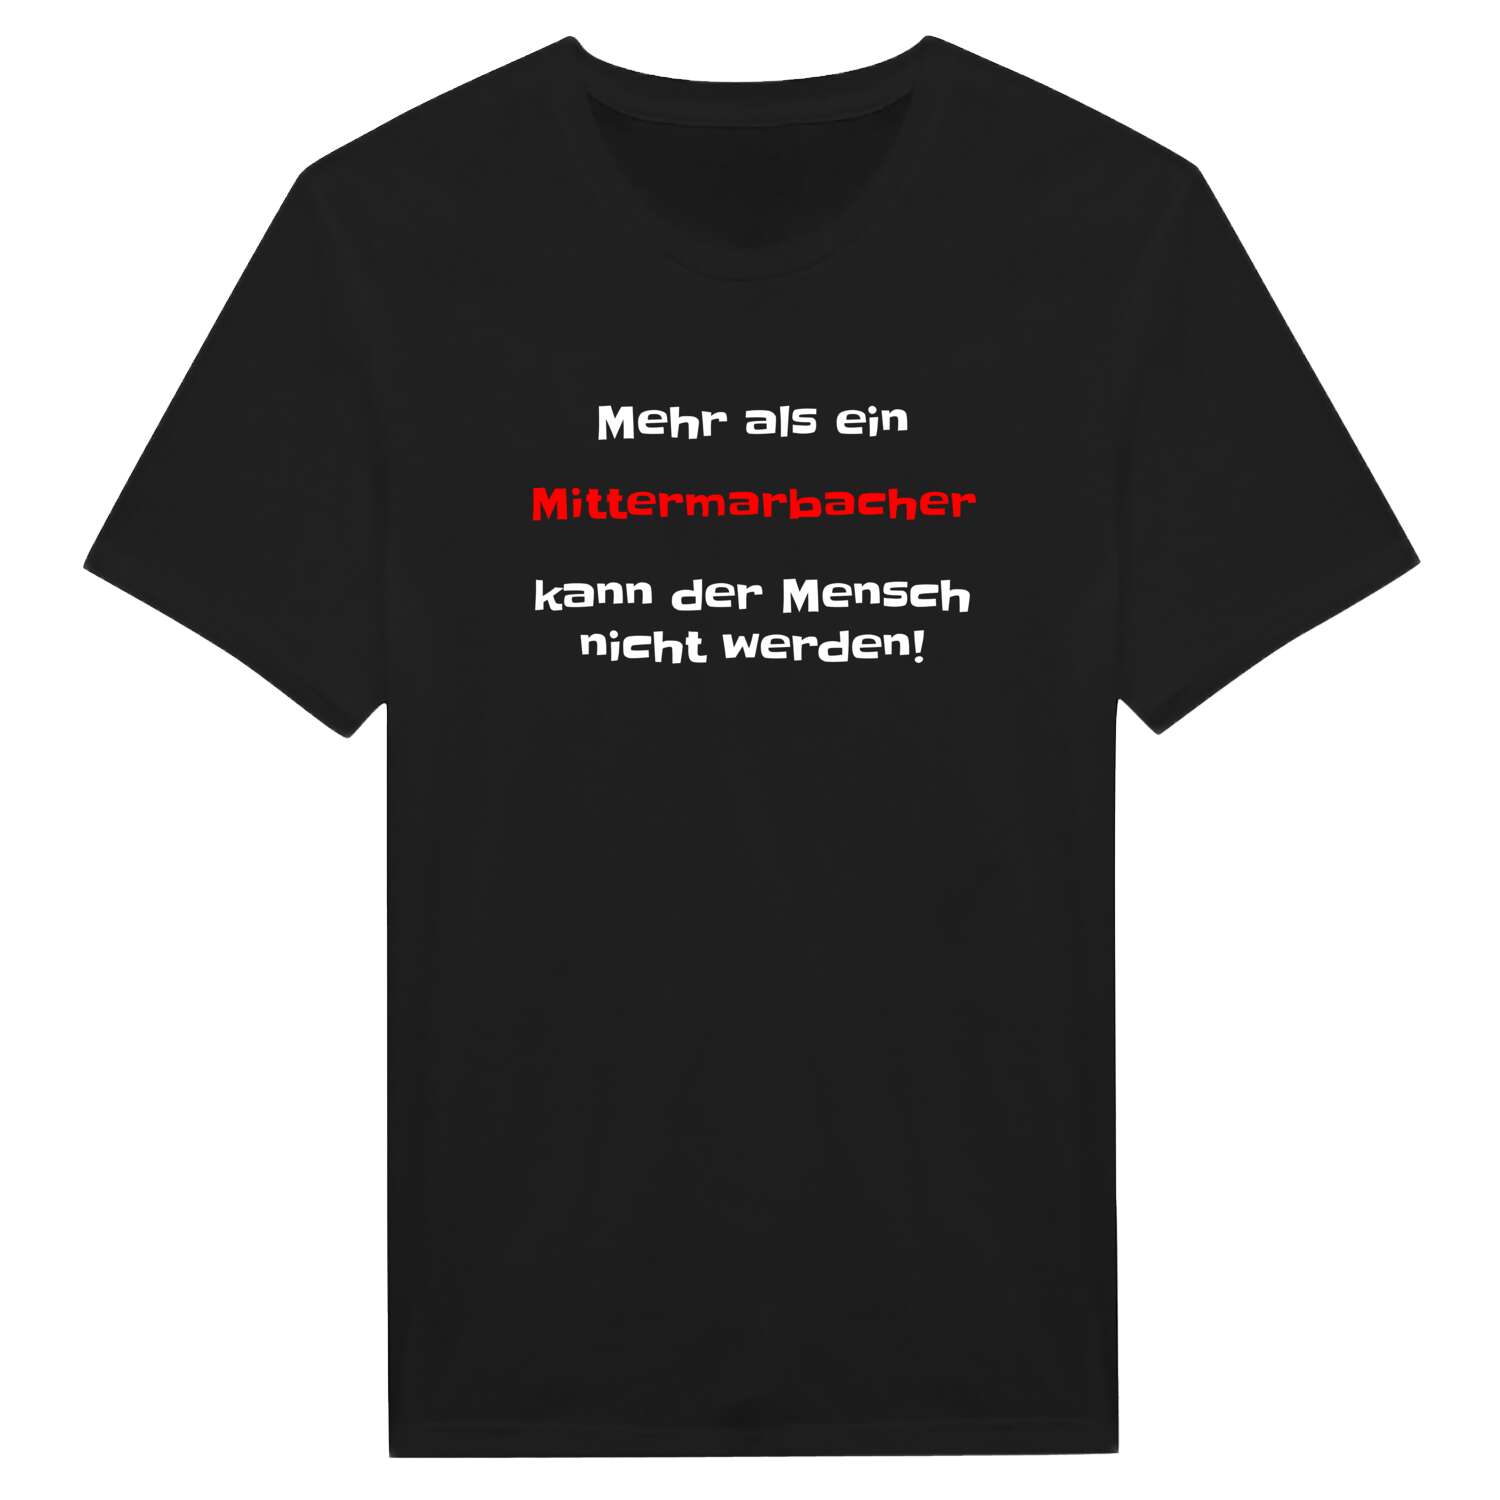 Mittermarbach T-Shirt »Mehr als ein«